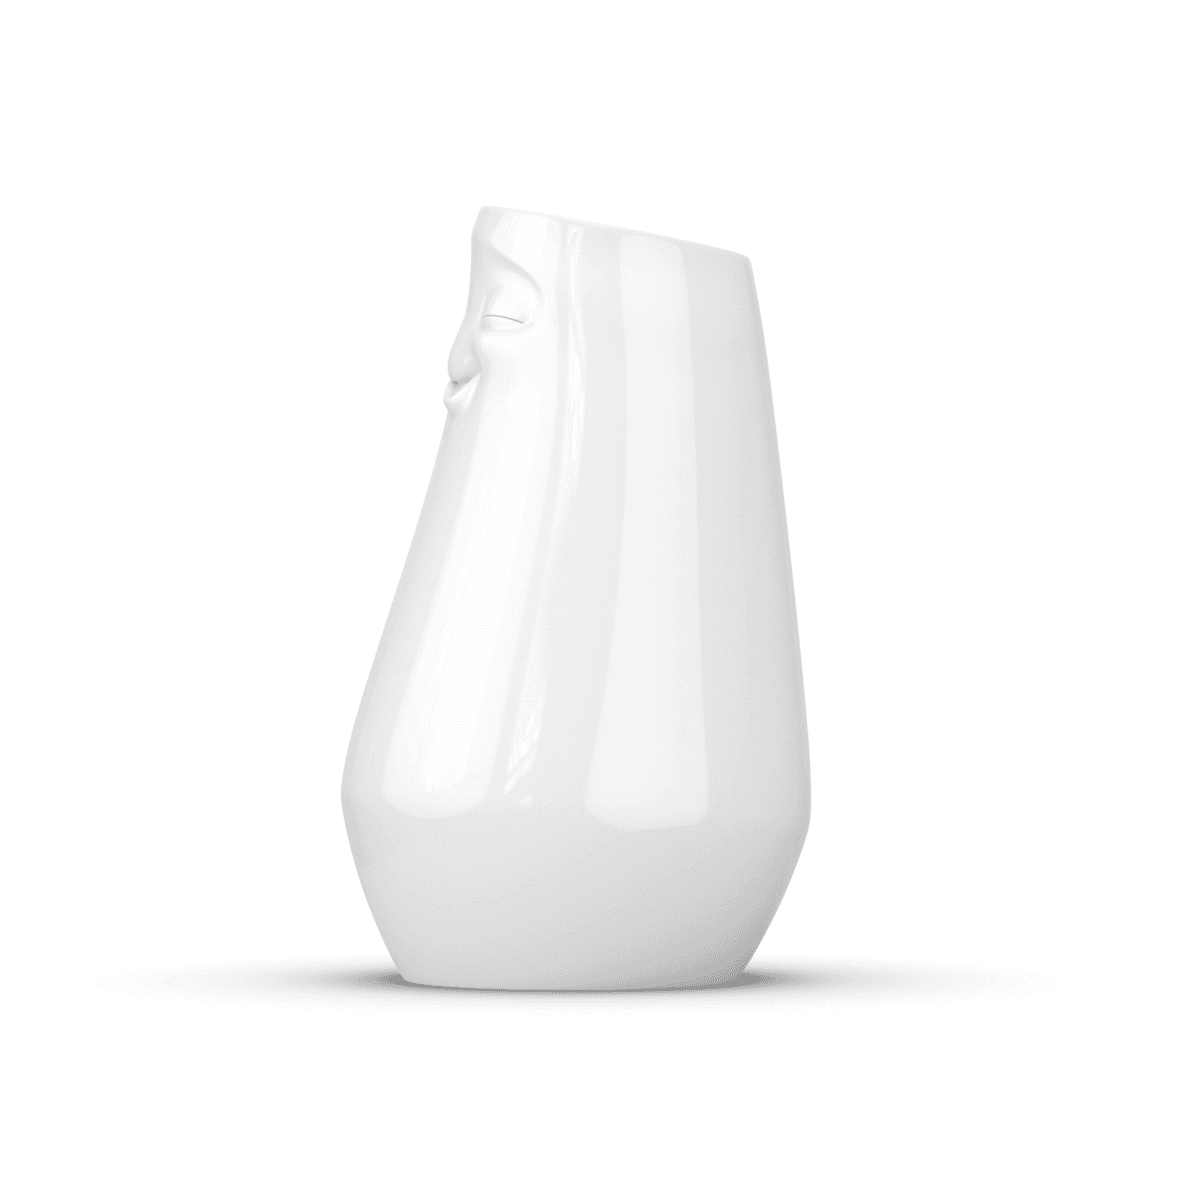 Immagine del prodotto Vaso Rilassato 3D per Piante e Fiori in Porcellana | TASSEN By Fiftyeight Products